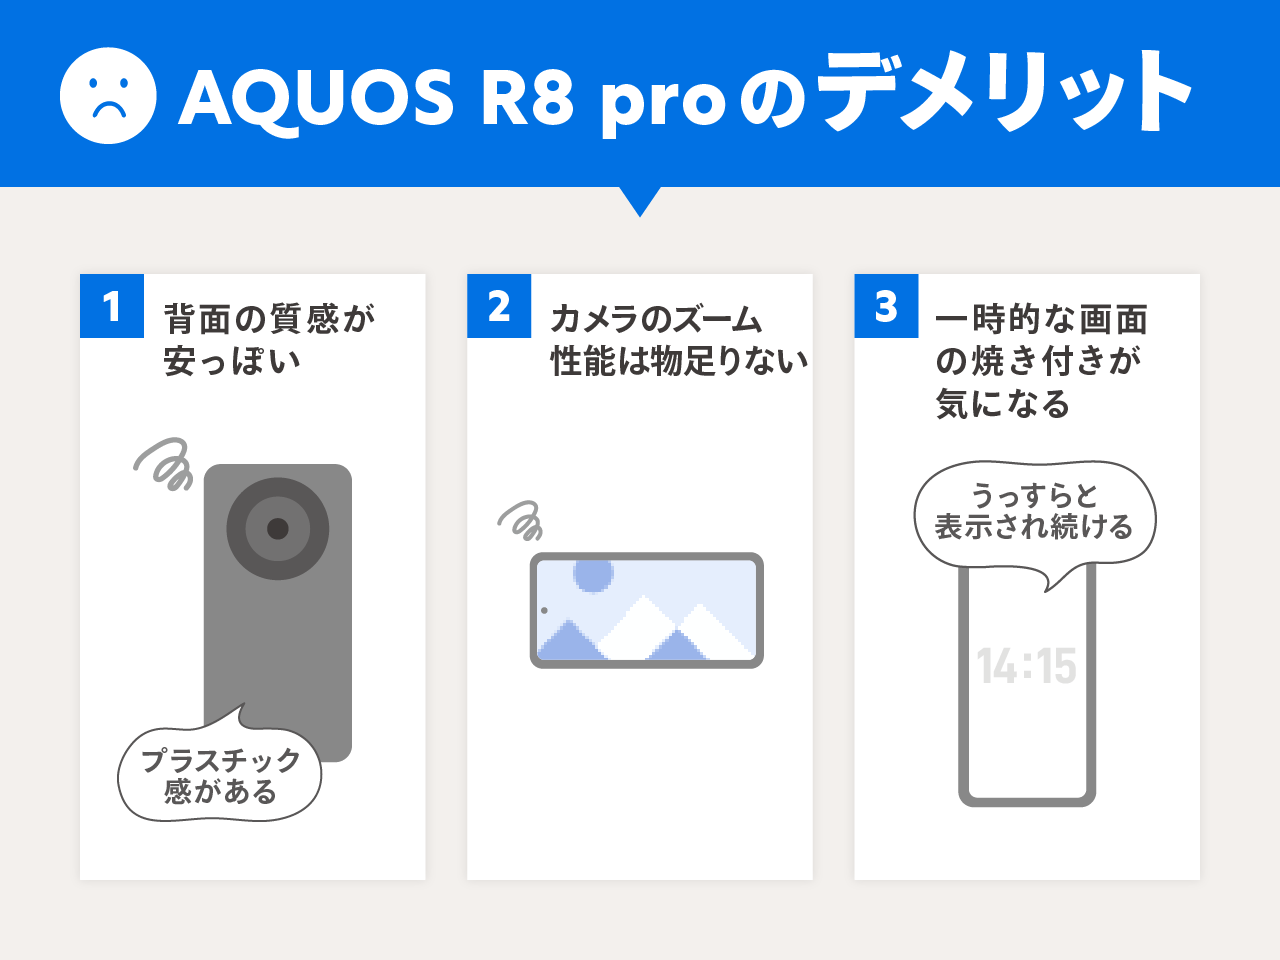 AQUOS R8 proのデメリット